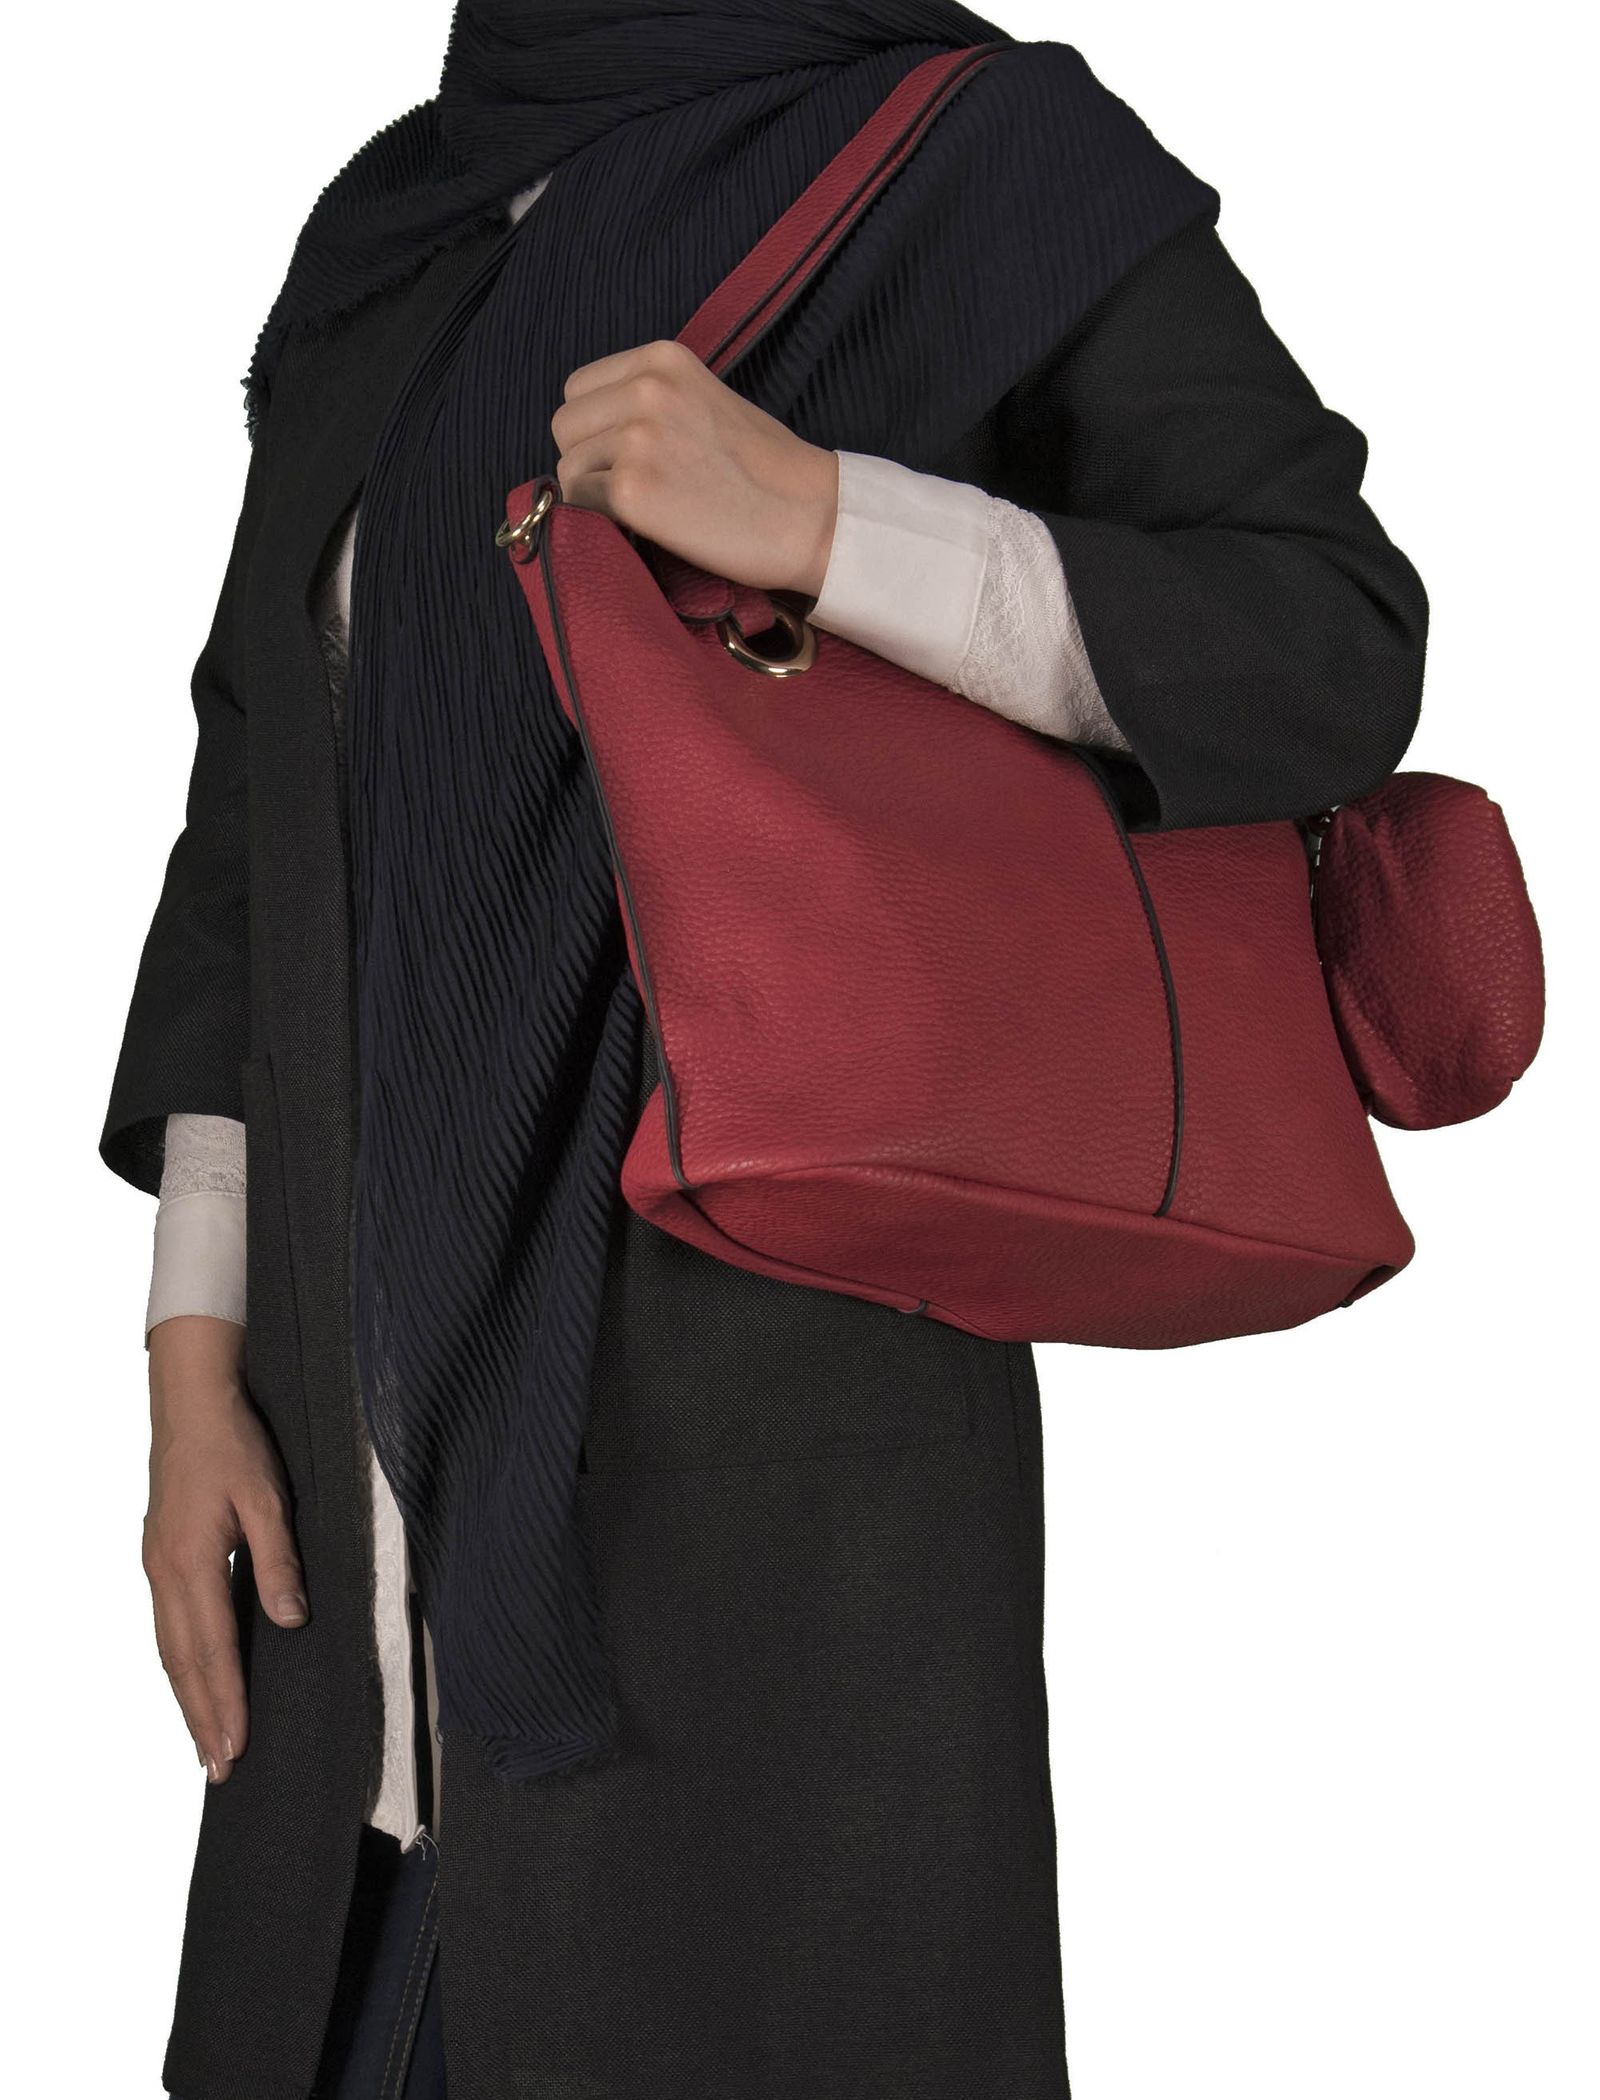 کیف دوشی روزمره زنانه - باتا - قرمز - 10